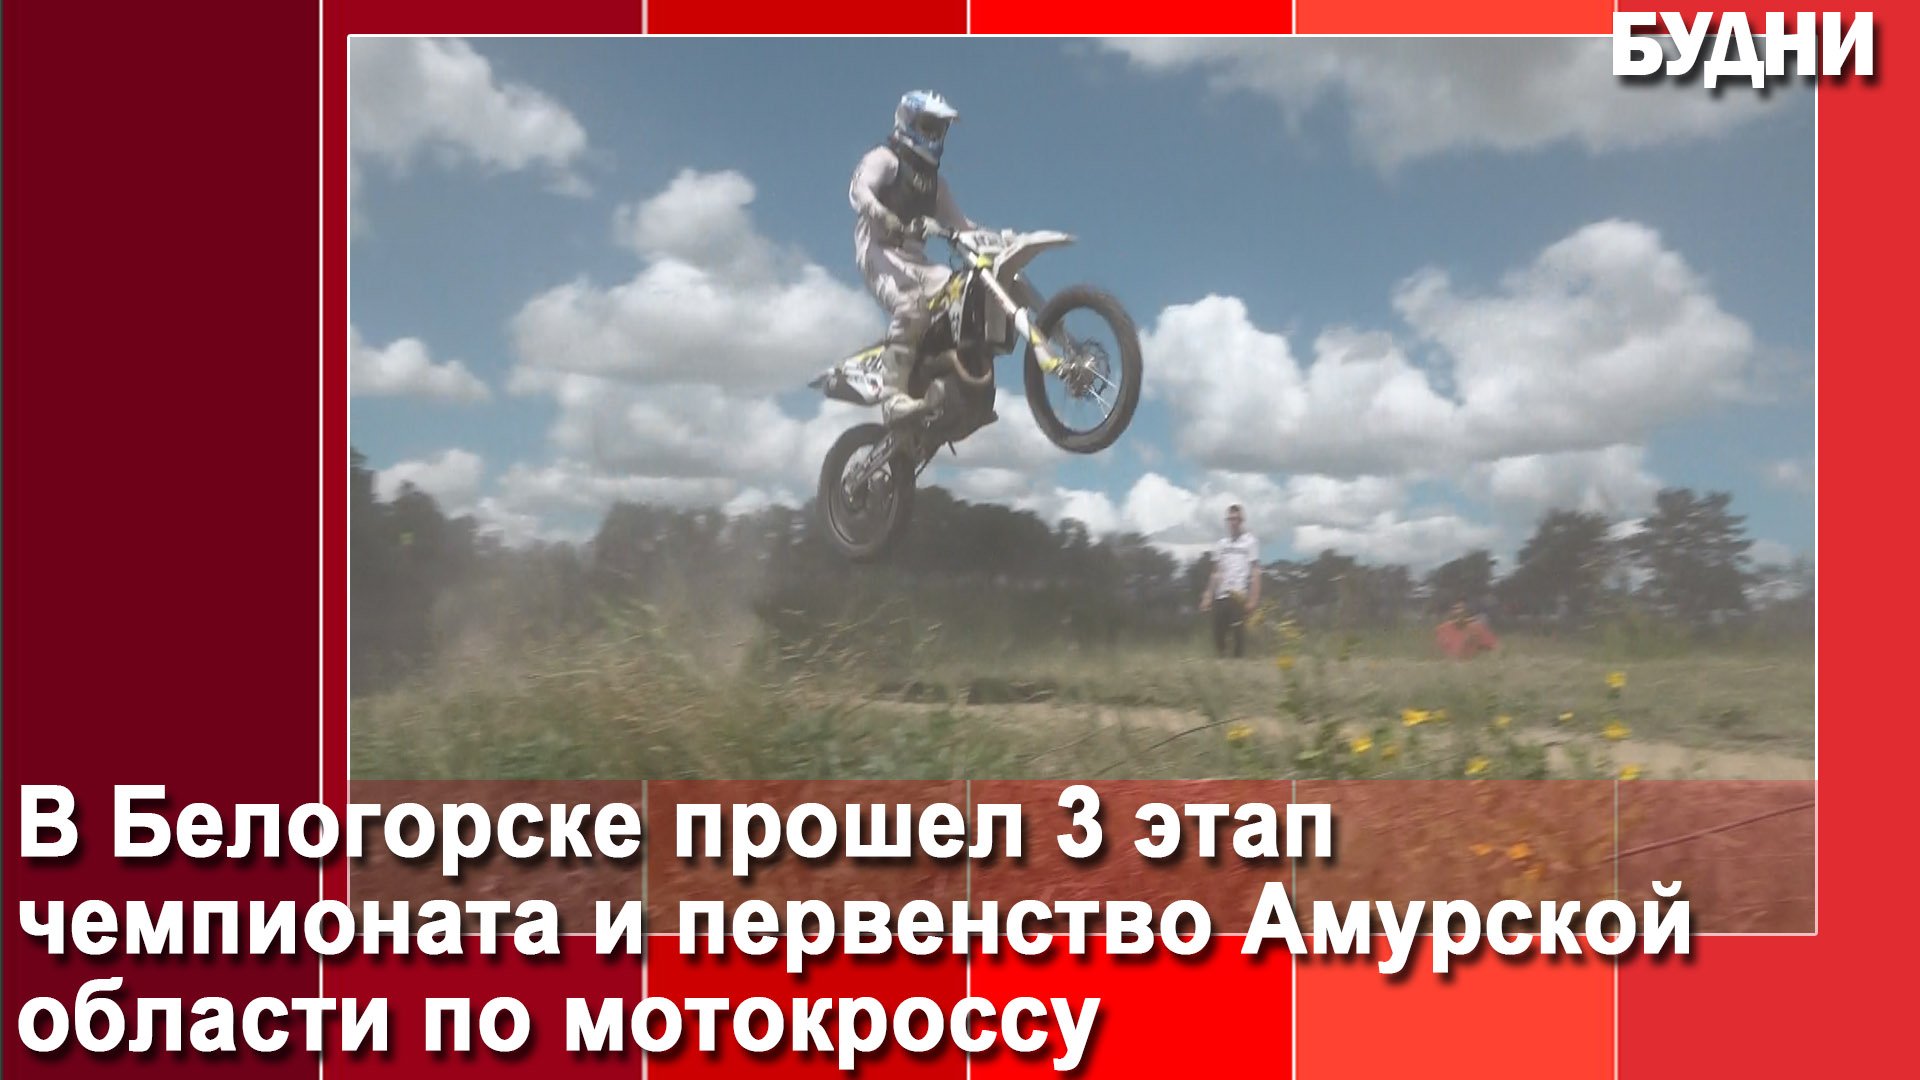 Соревнования по мотокроссу прошли в Белогорске